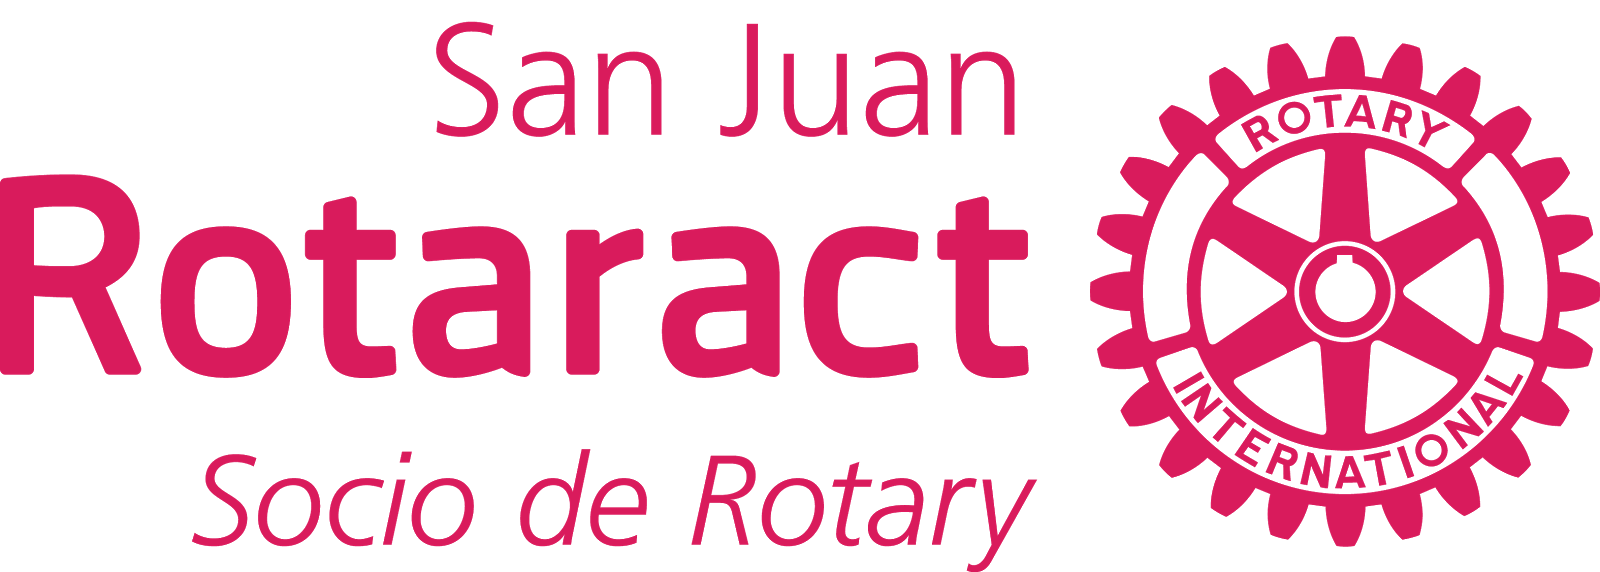 Rotaract San Juan - República Dominicana